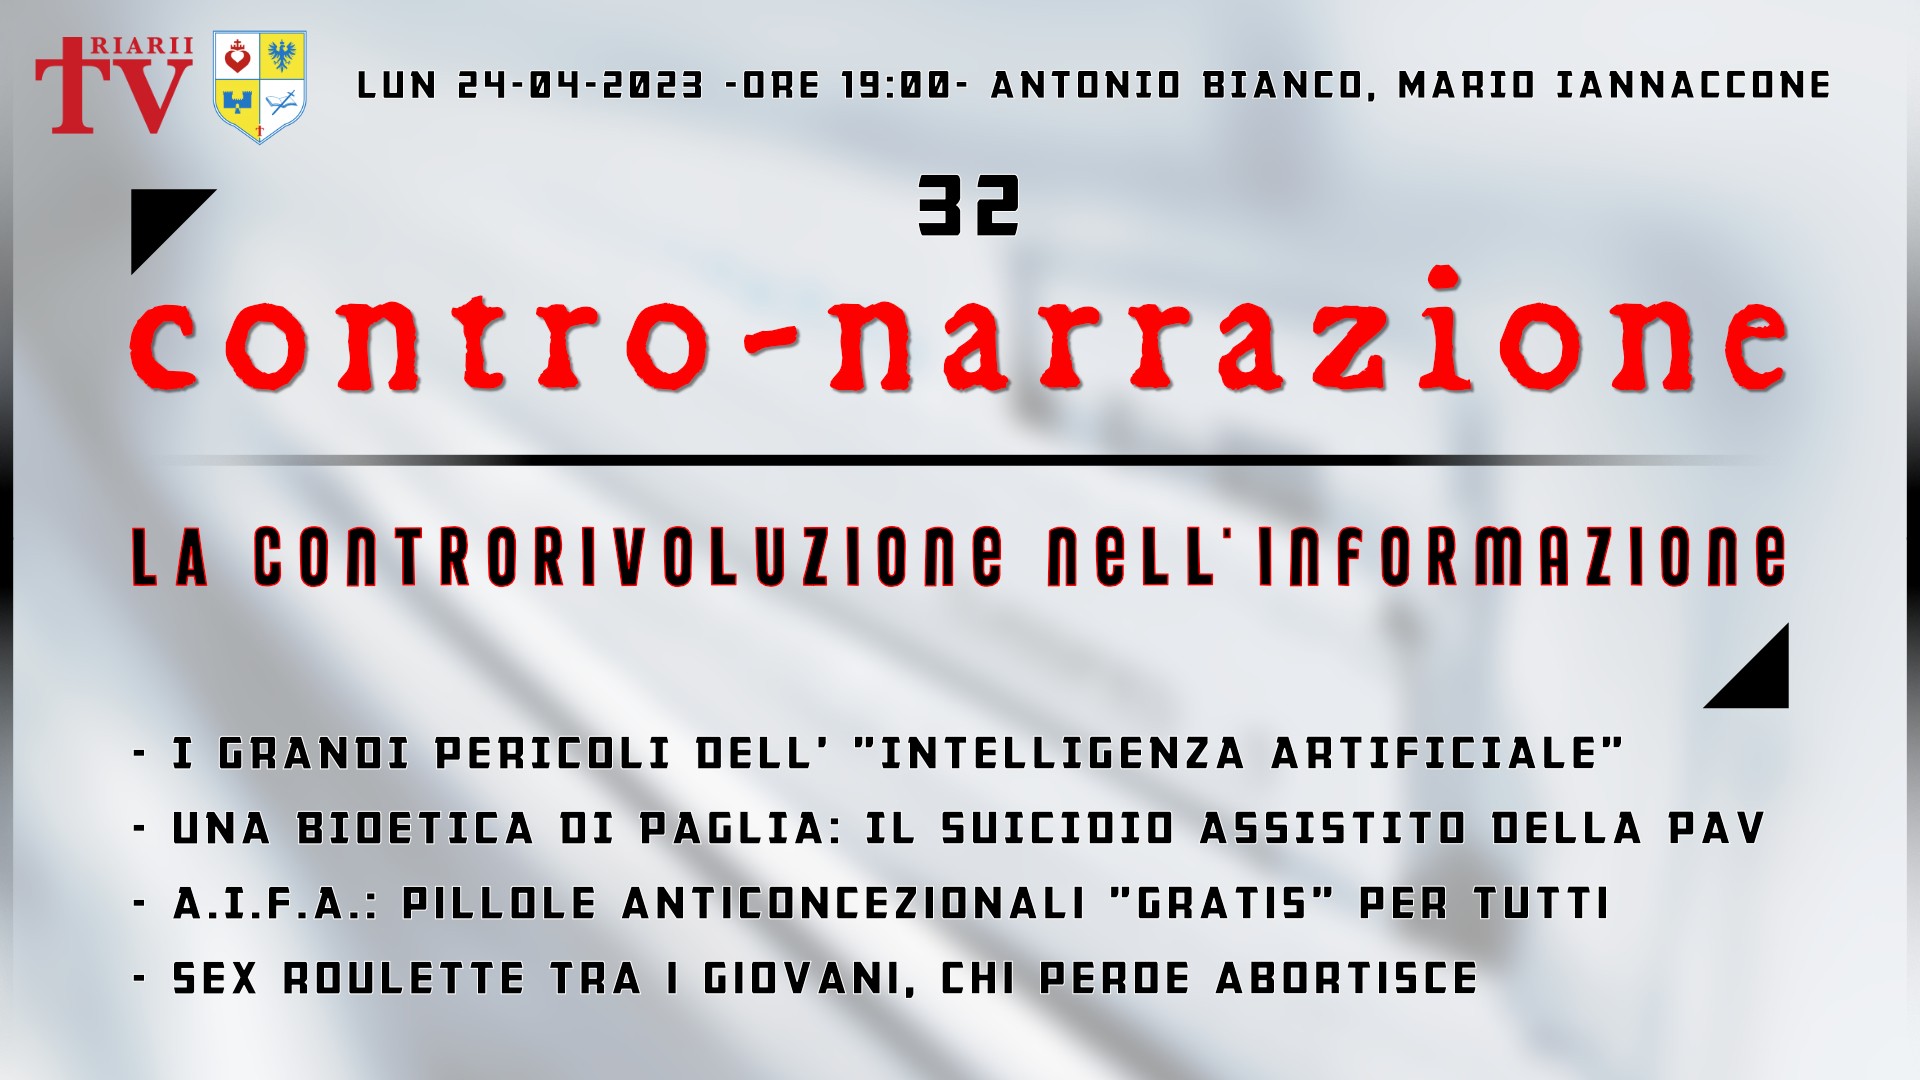 CONTRO-NARRAZIONE NR.32 - LUN 24 APRILE 2023 - Antonio Bianco, Mario Iannaccone